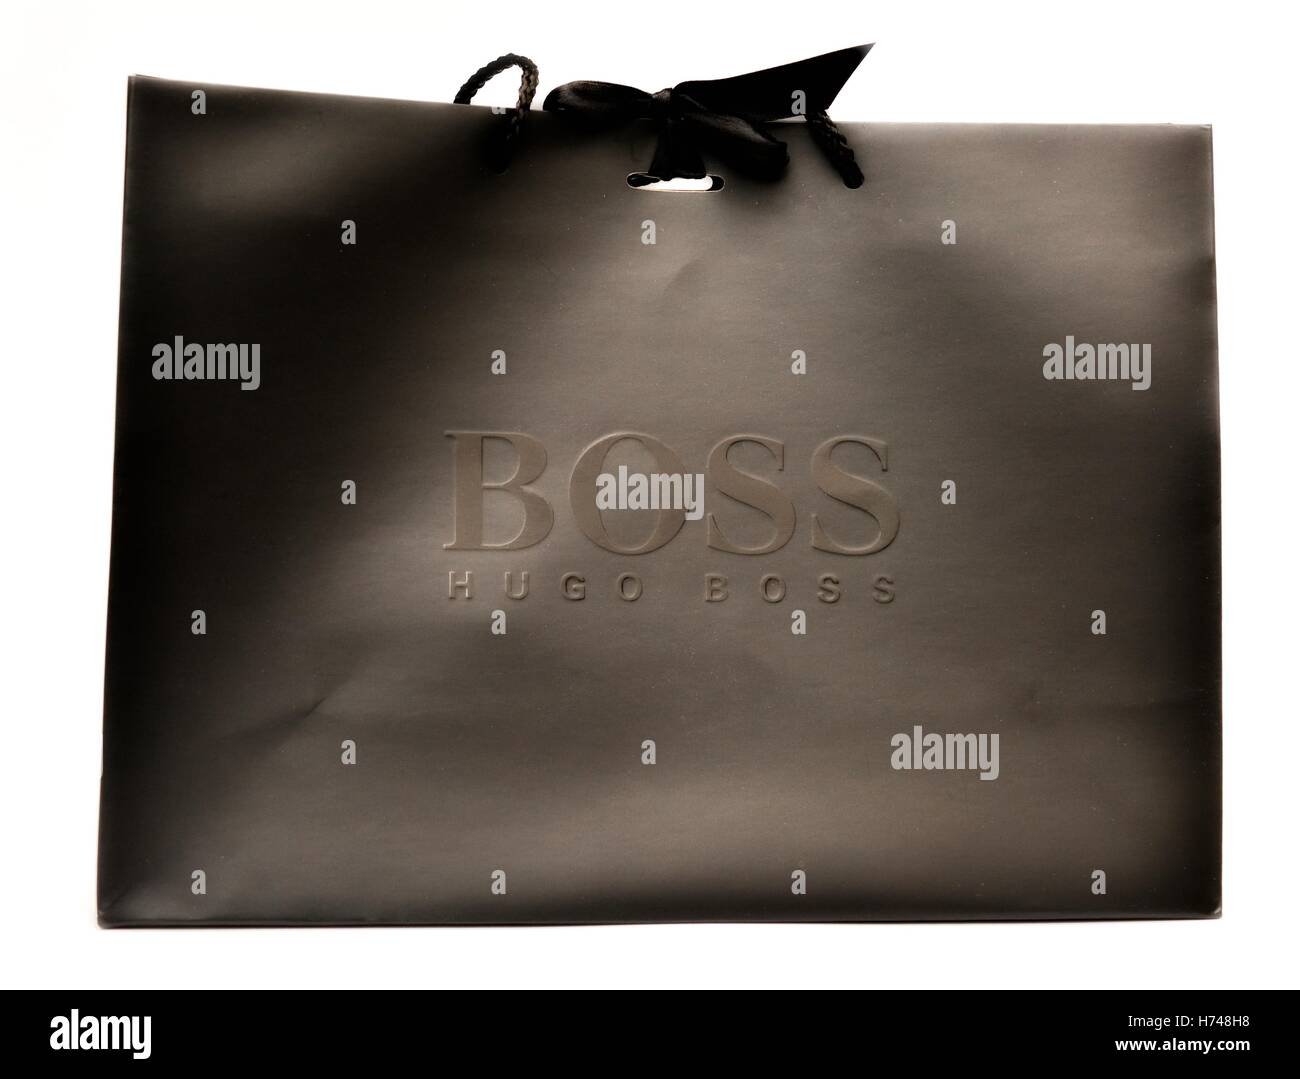 hugo boss gift bag